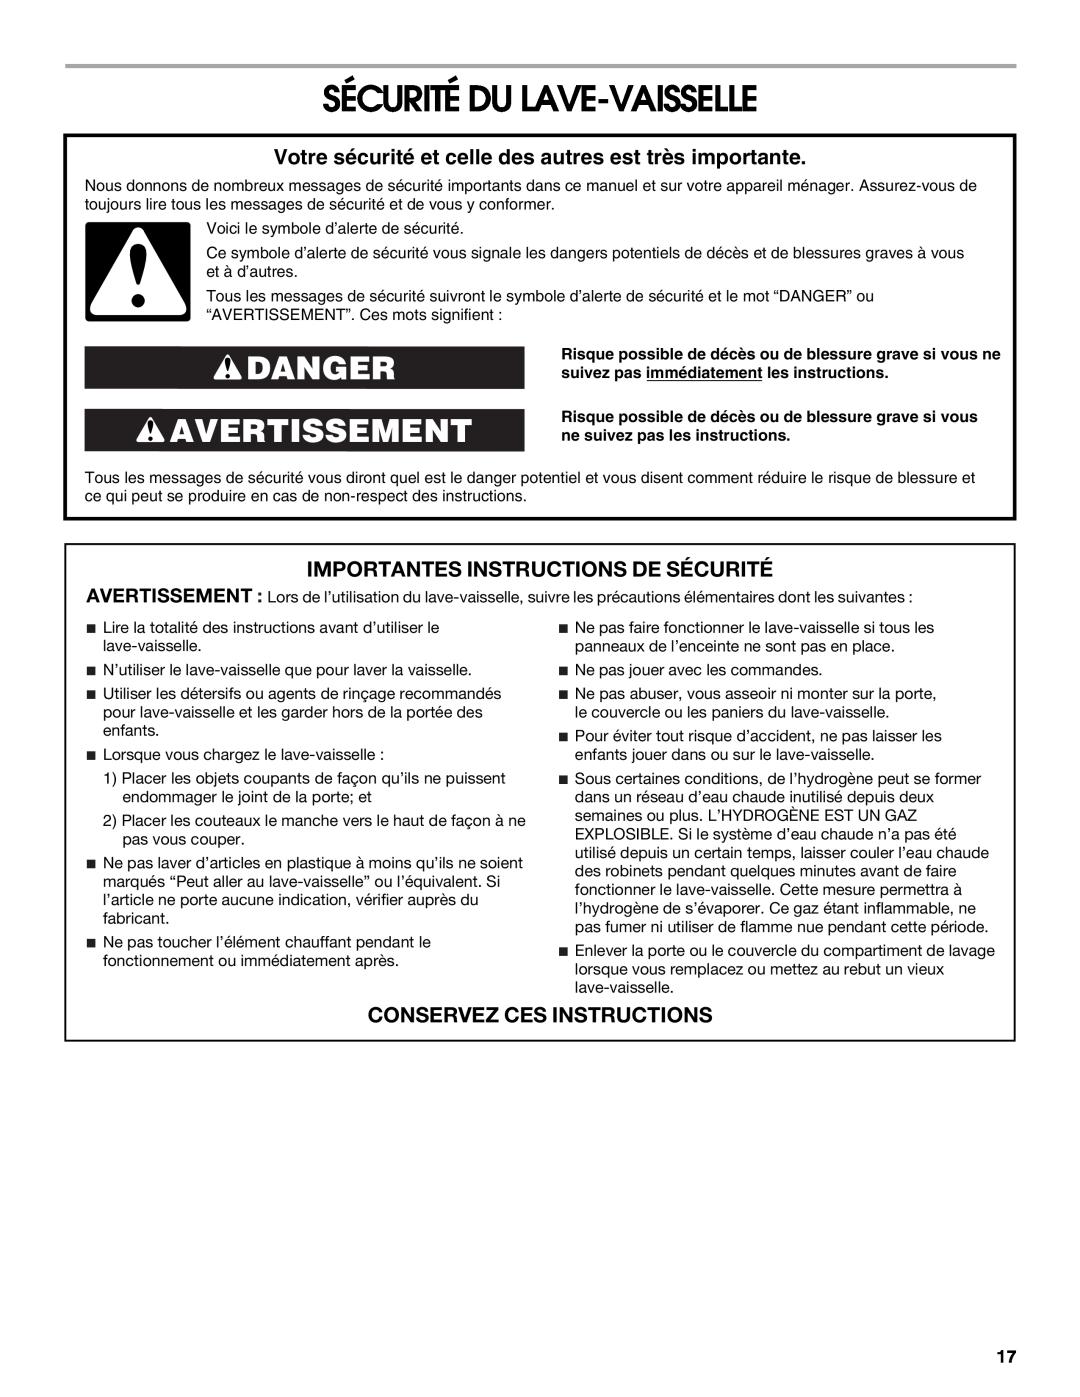 Estate TUD6710, TUD6750 manual Sécurité Du Lave-Vaisselle, Danger Avertissement, Importantes Instructions De Sécurité 